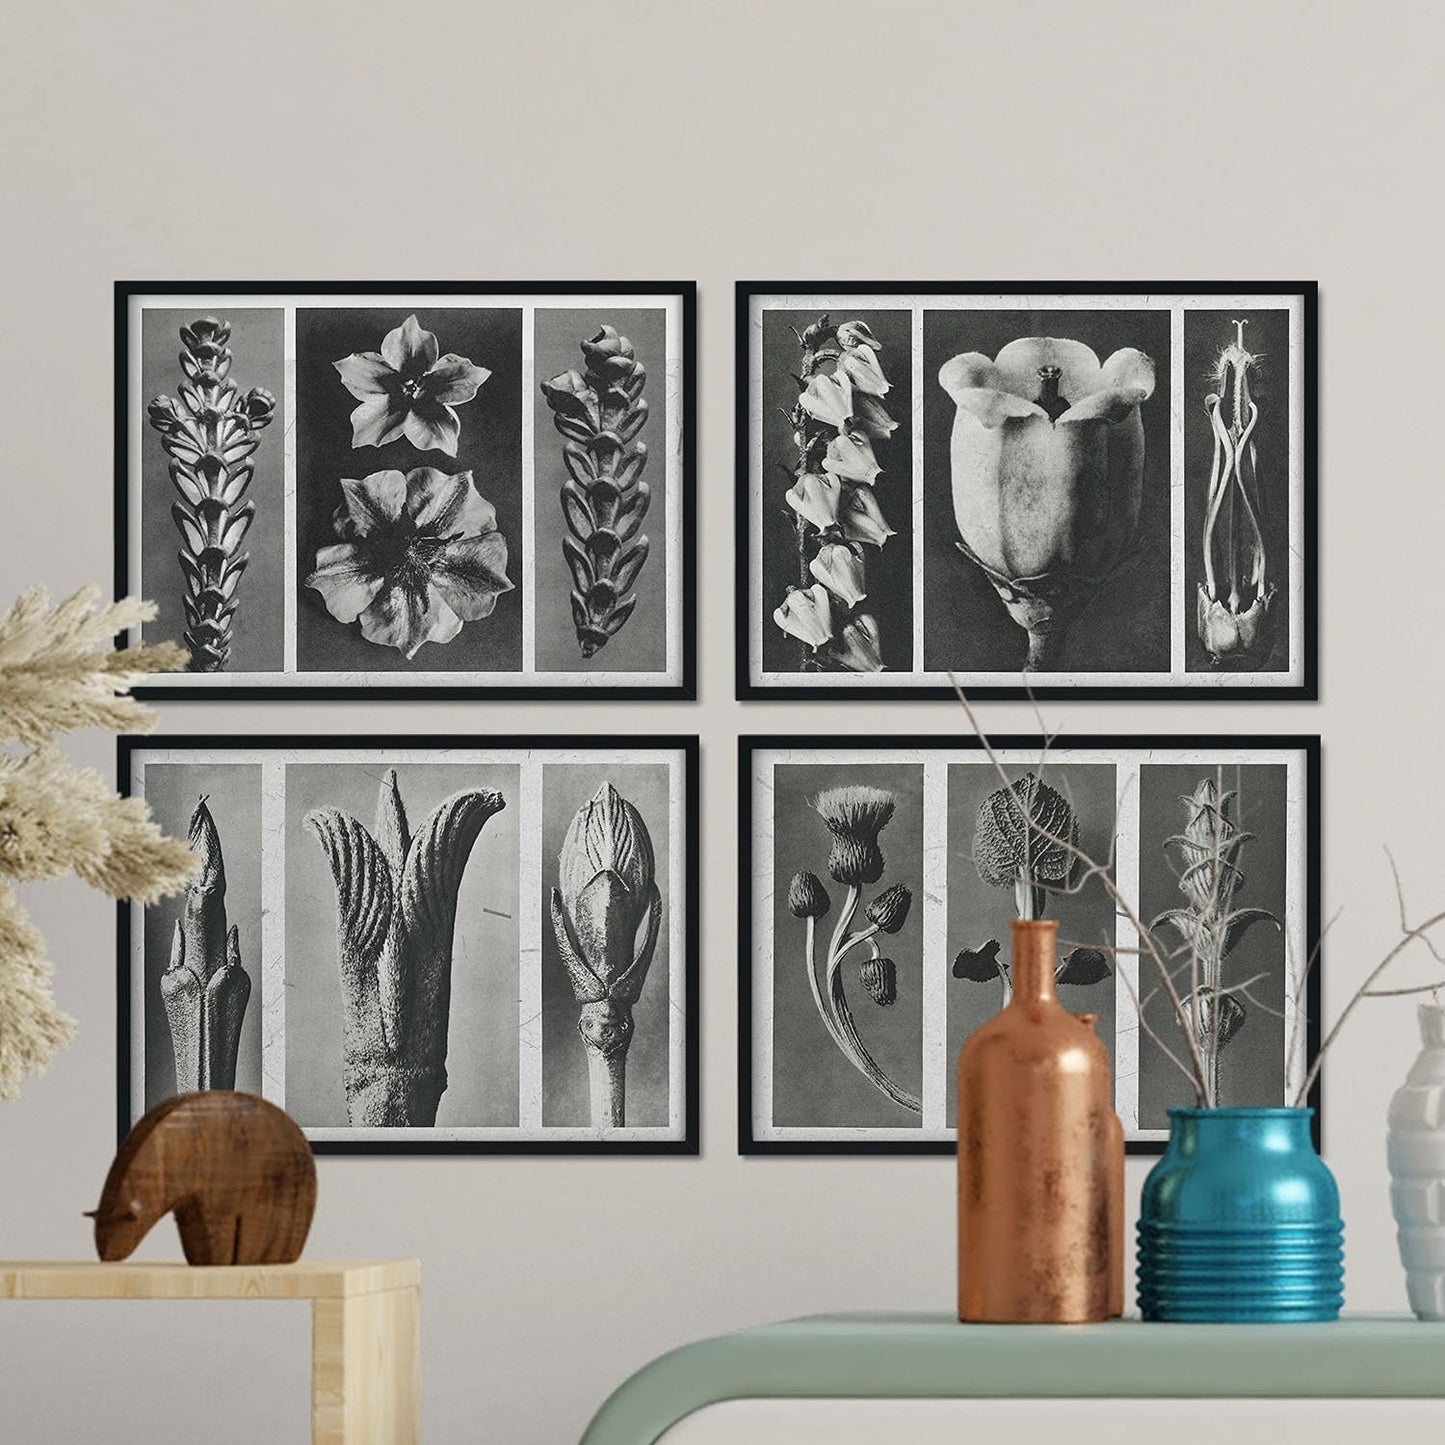 Pack de láminas Flores 2. Pósters con ilustraciones de flores y plantas en tonos grises.-Artwork-Nacnic-Nacnic Estudio SL